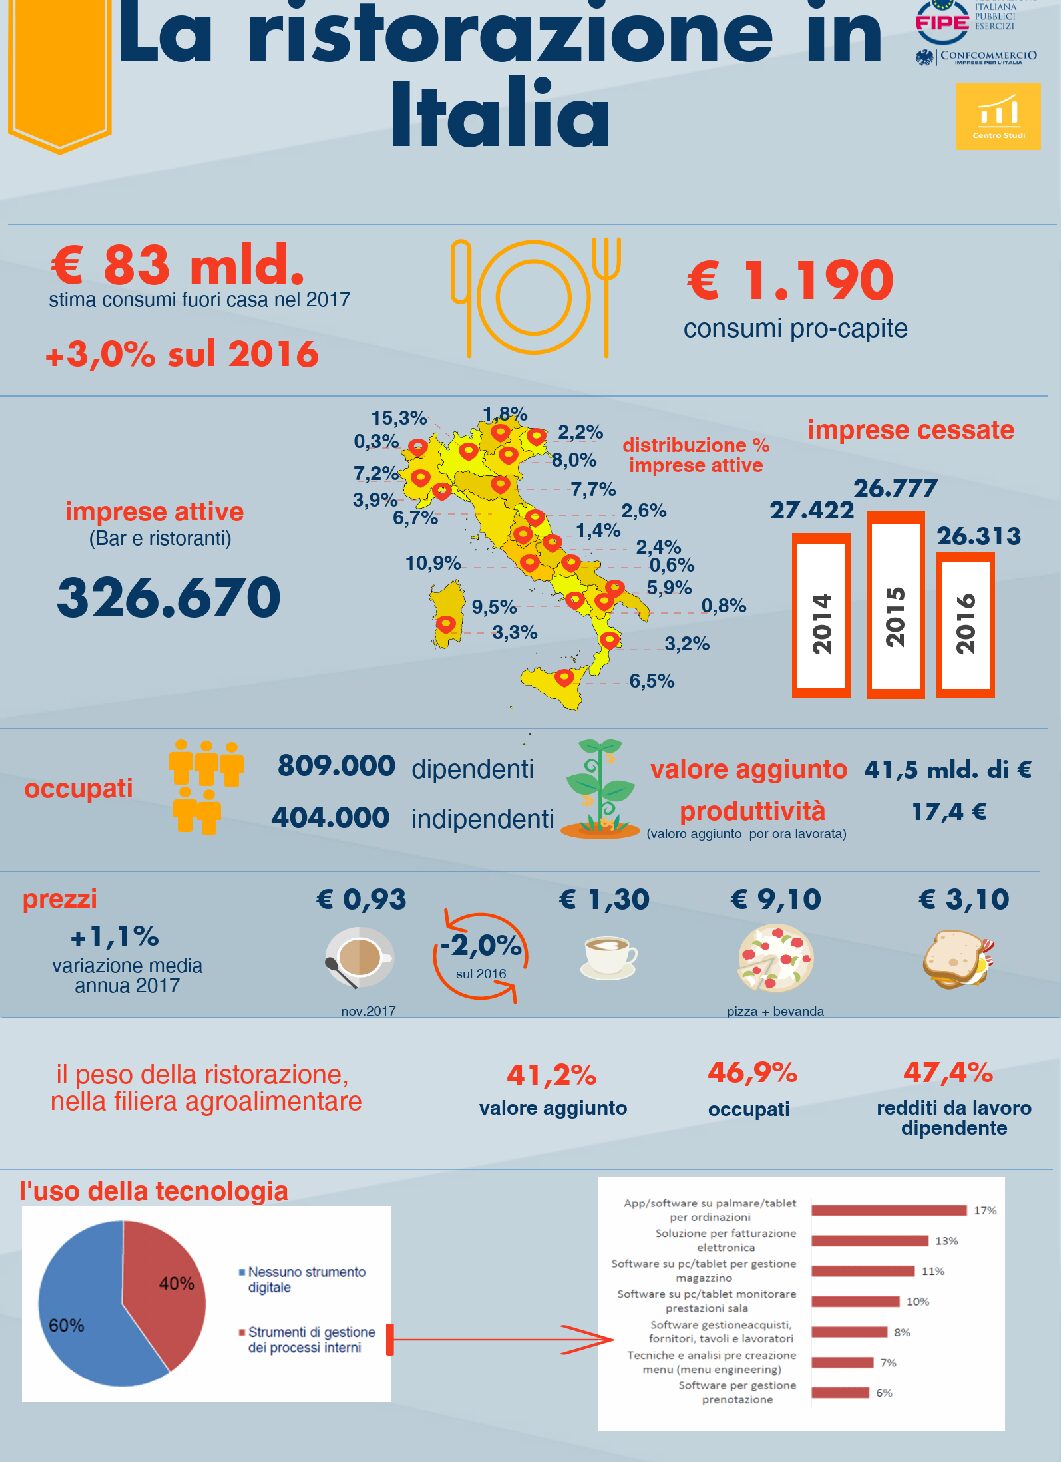 Mangiare fuori casa costa agli Italiani 83 miliardi. La nostra ristorazione traina la ripresa, più 3%, ed è la terza per volumi in Europa